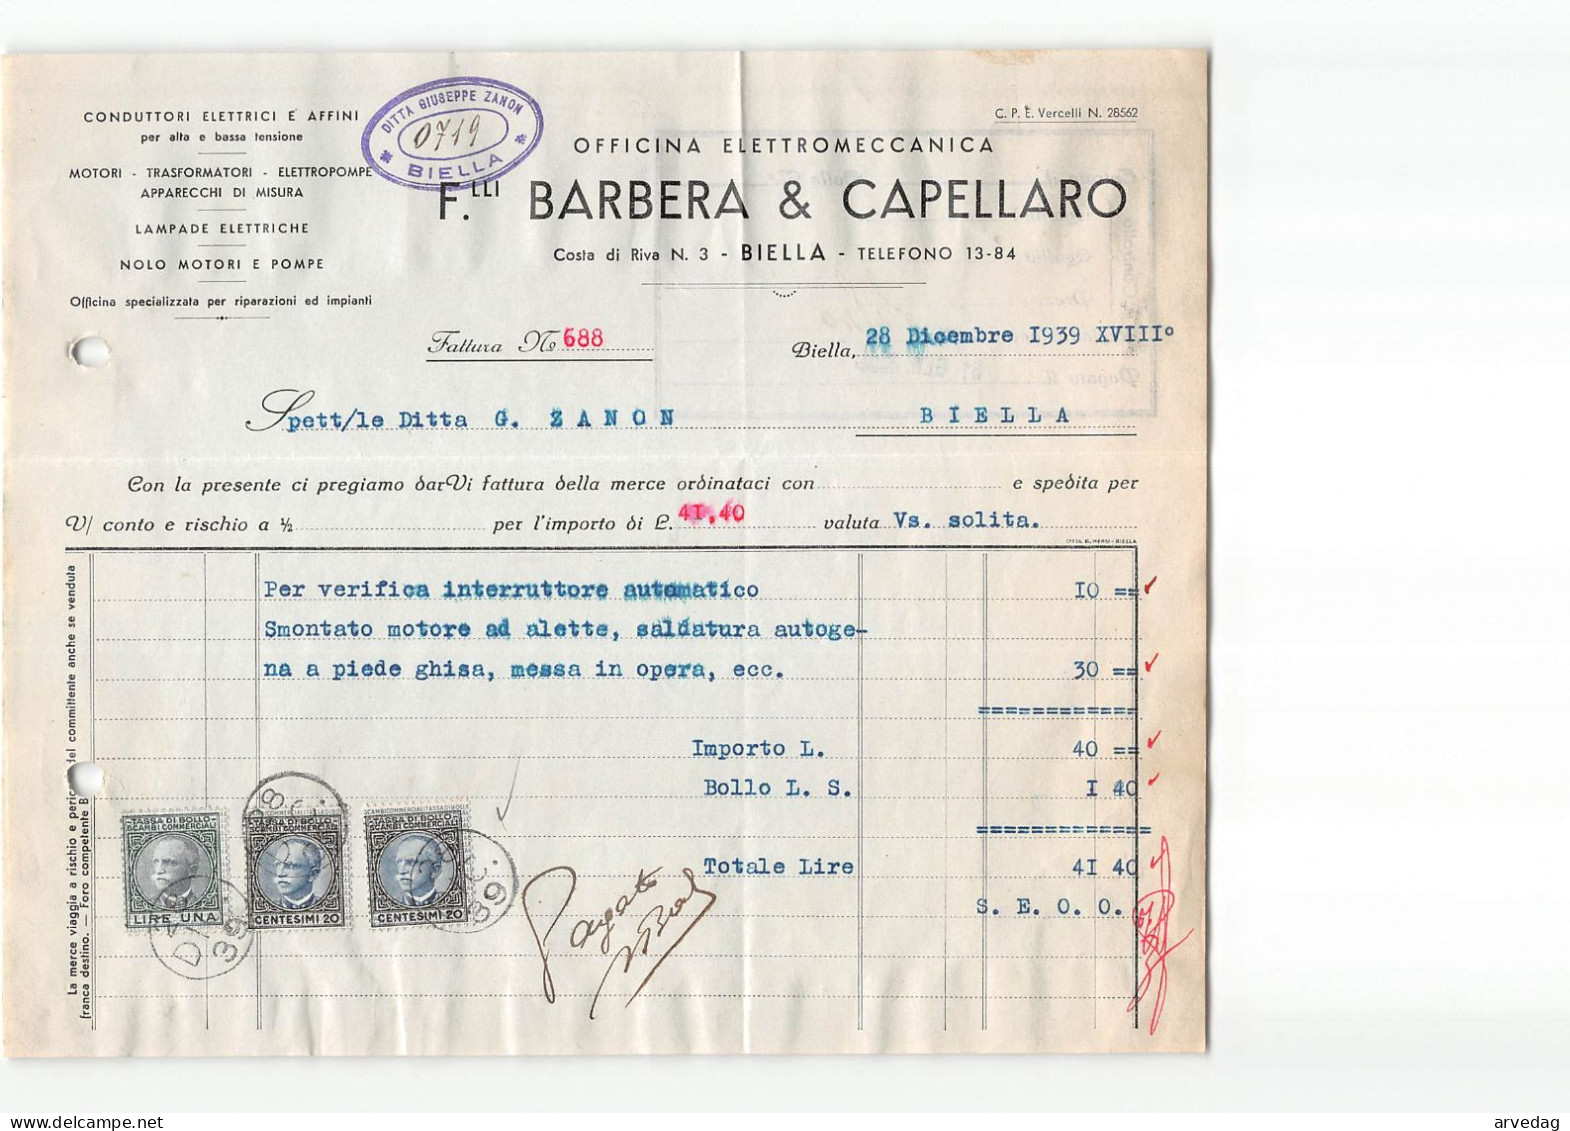 AG2607 BARBERA & CAPELLARO OFFICINA ELETTROMECCANICA - FATTURA - Italien